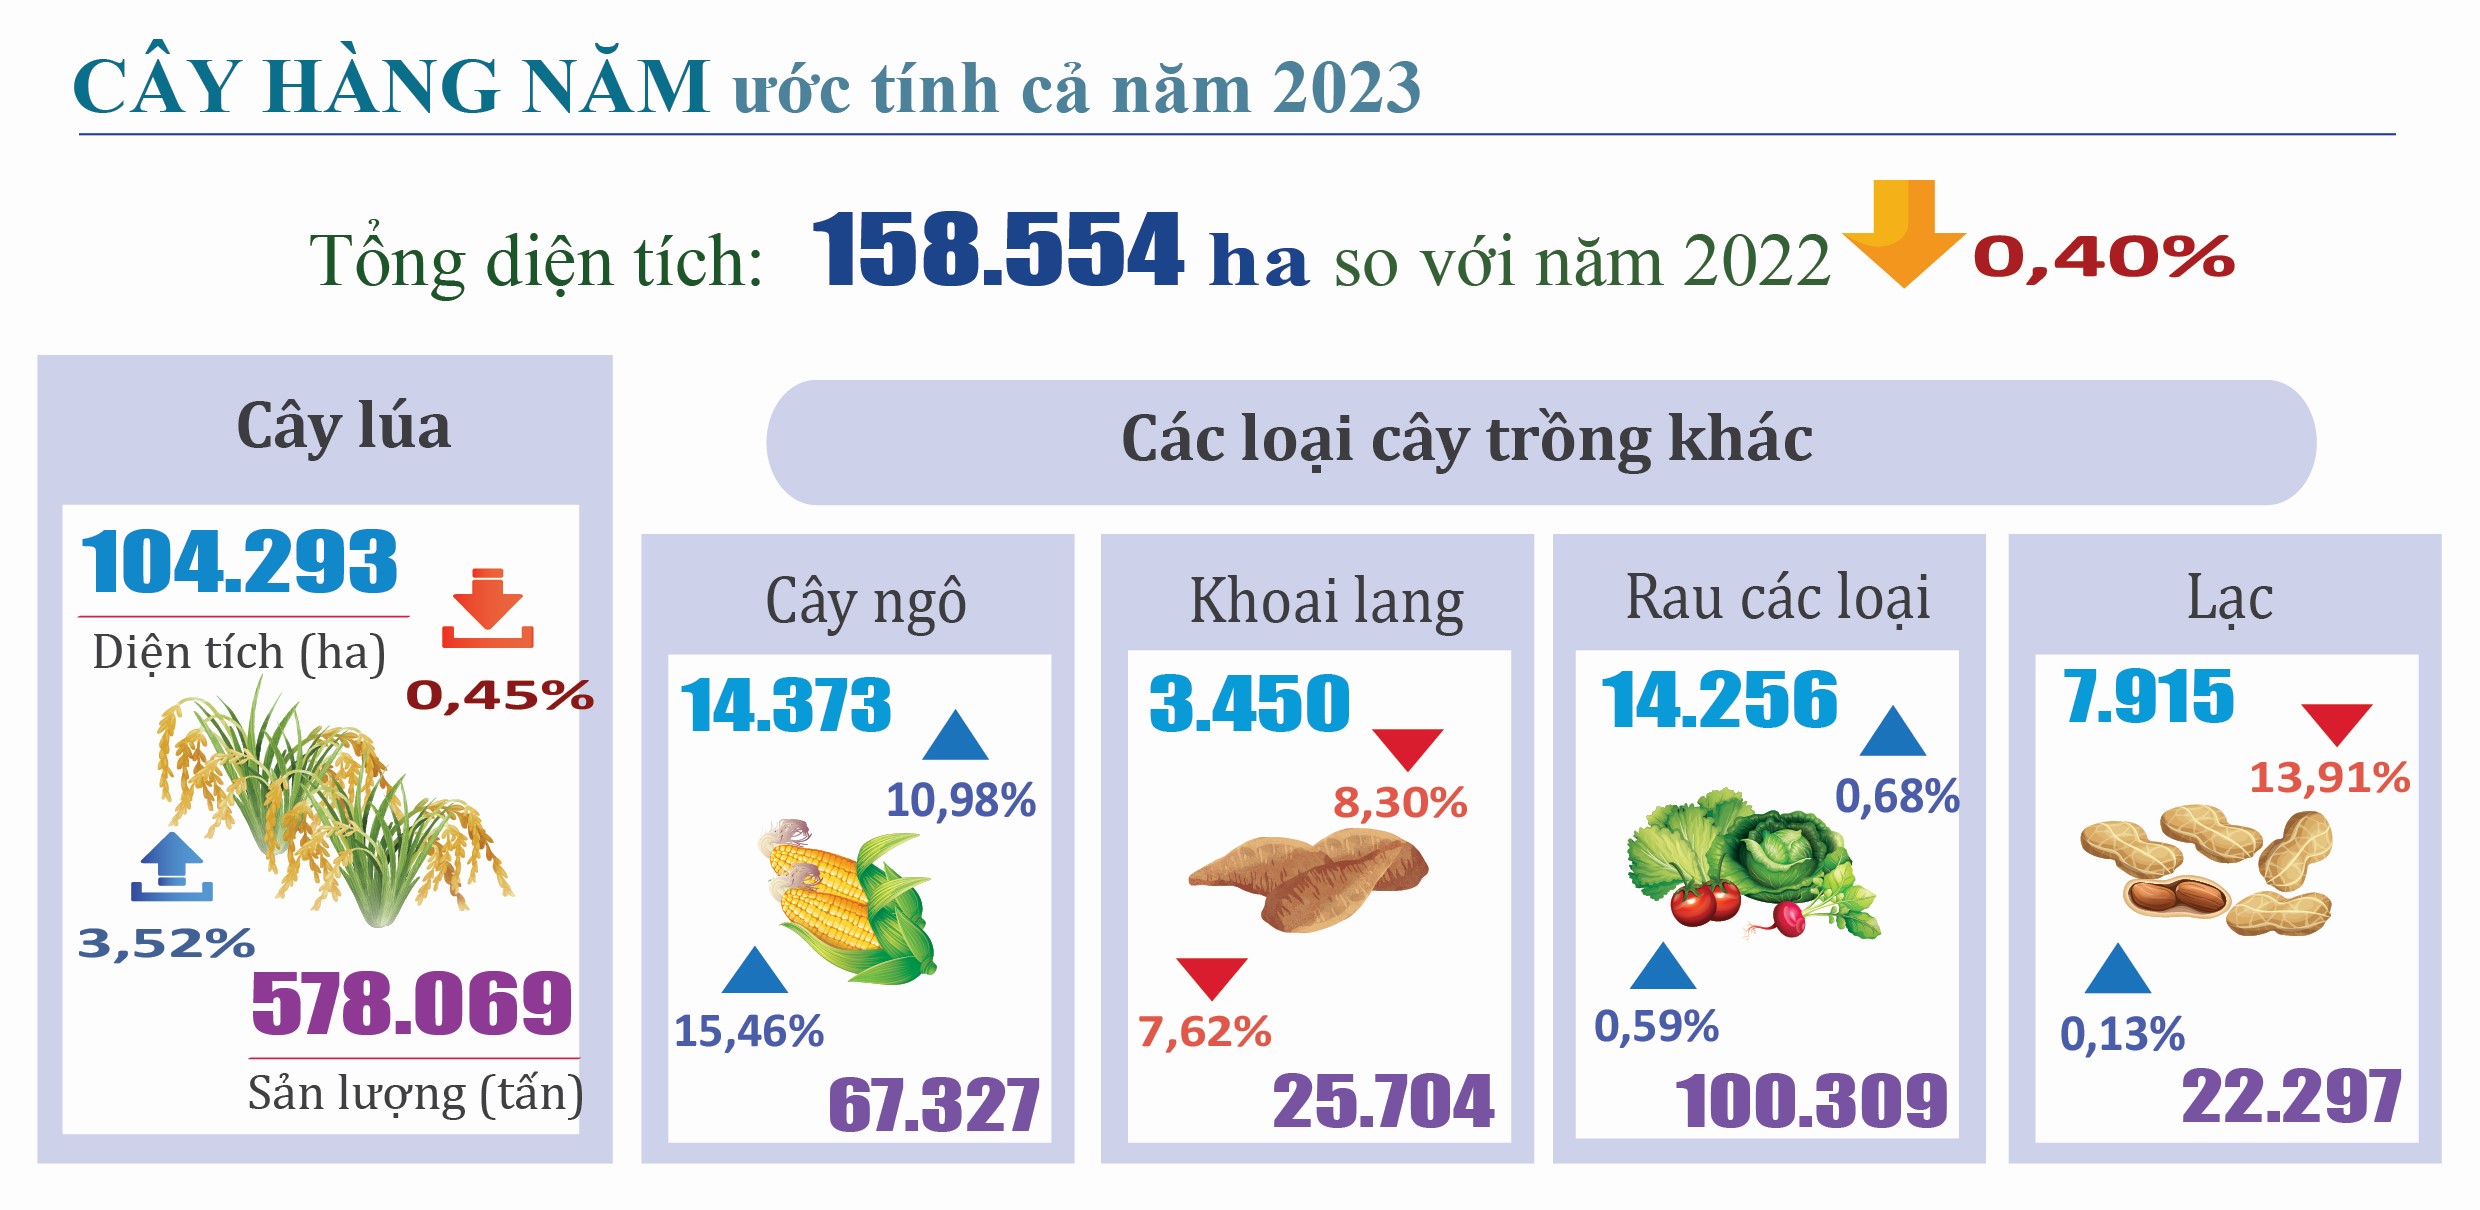 Tình hình kinh tế - xã hội quý III và 9 tháng năm 2023 tỉnh Hà Tĩnh